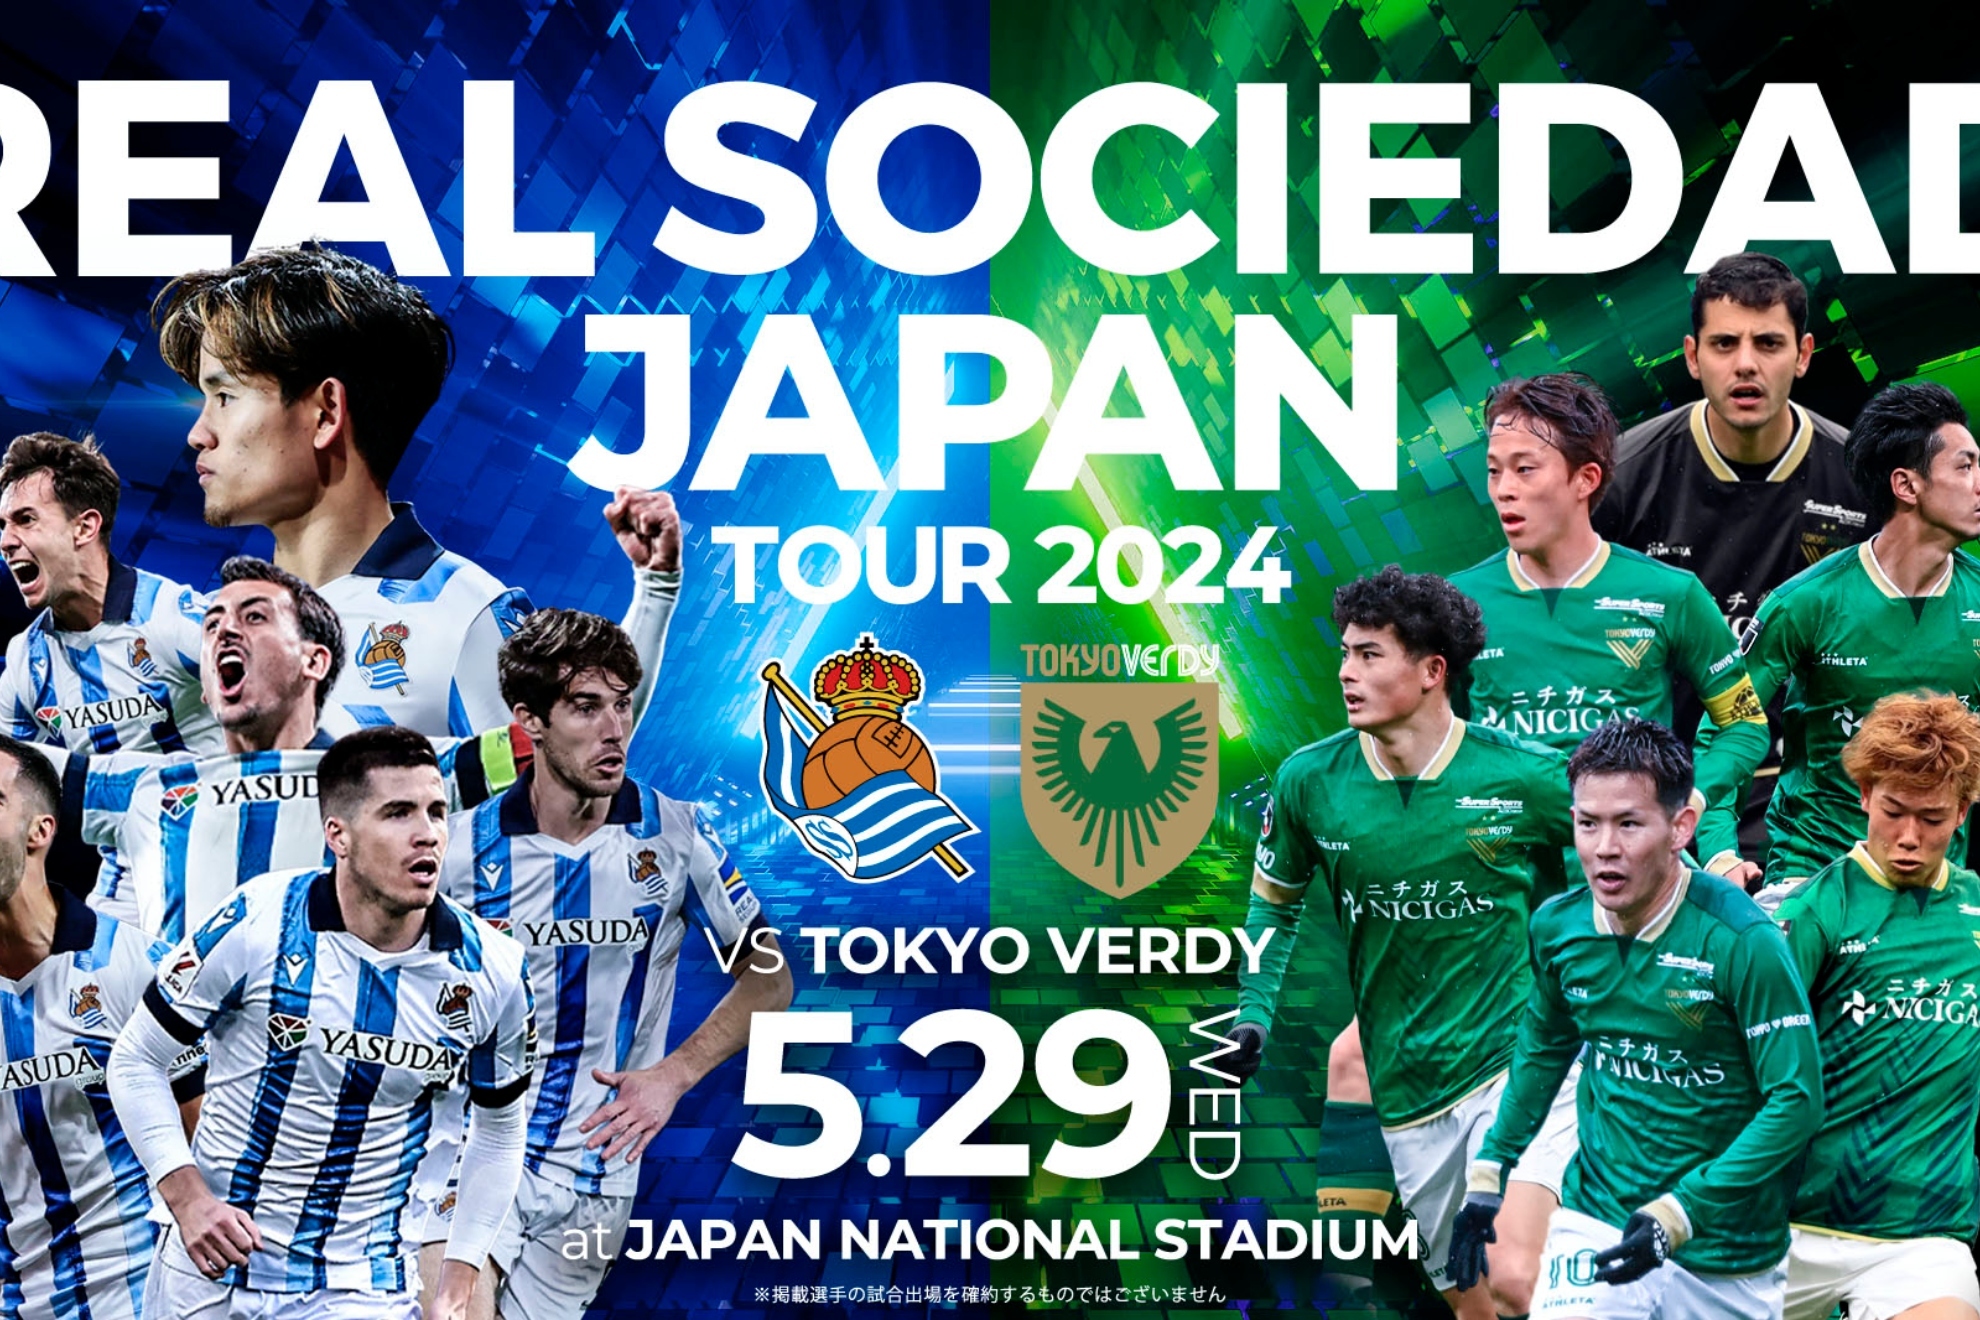 Cartel anunciador del amistoso de la Real Sociedad en Jap�n.